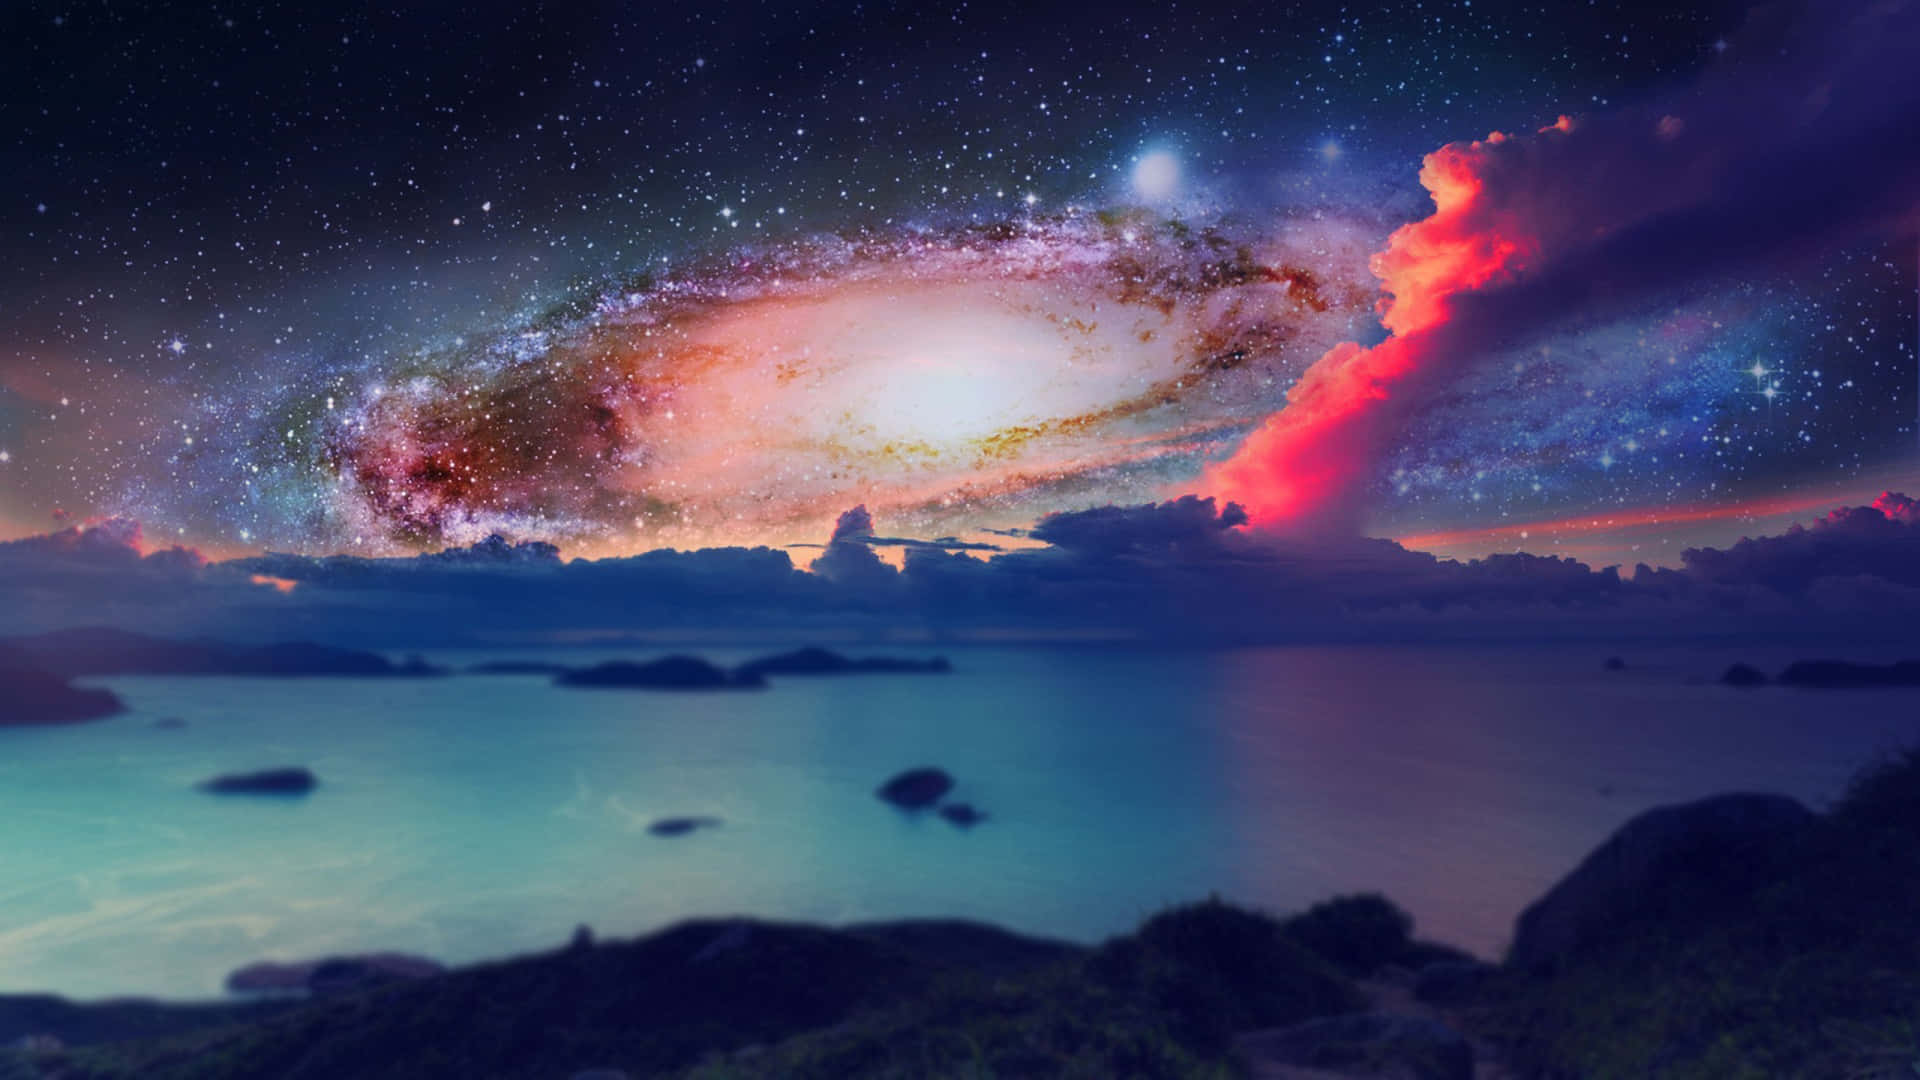 Högupplöstbakgrundsbild Av Vintergatan I Galaxen Med Vatten.